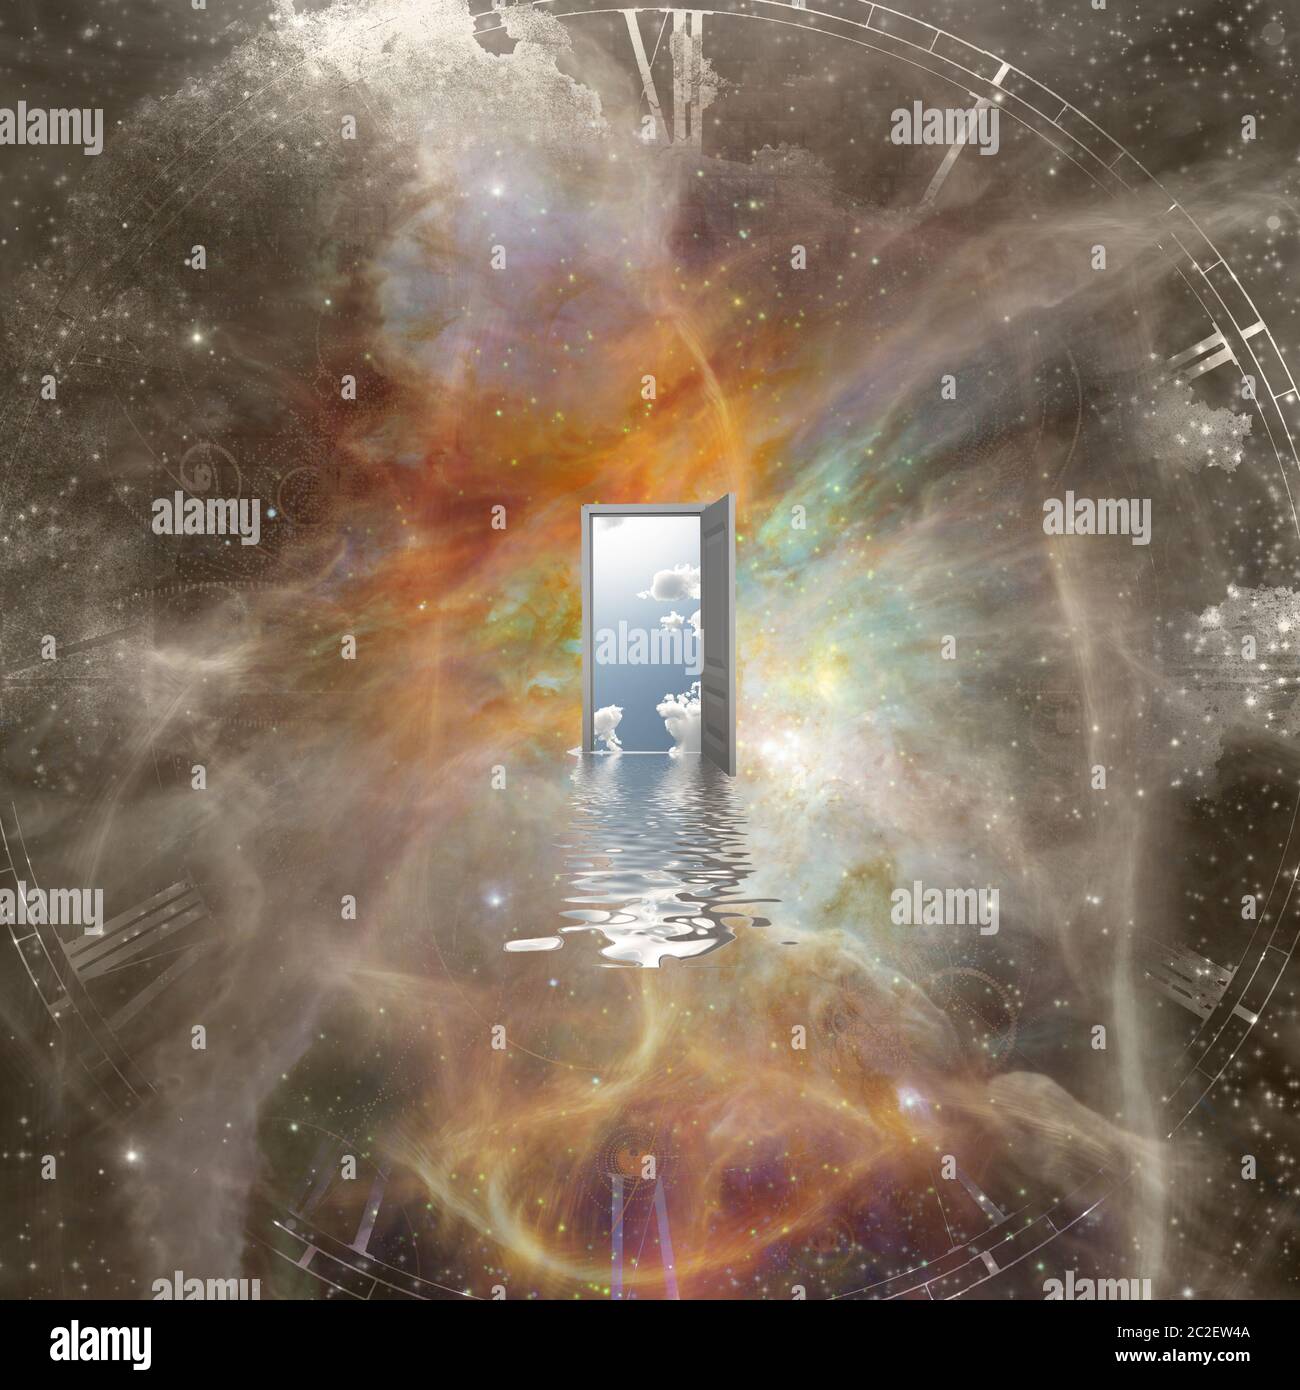 Open door in abstract space Stock Photo